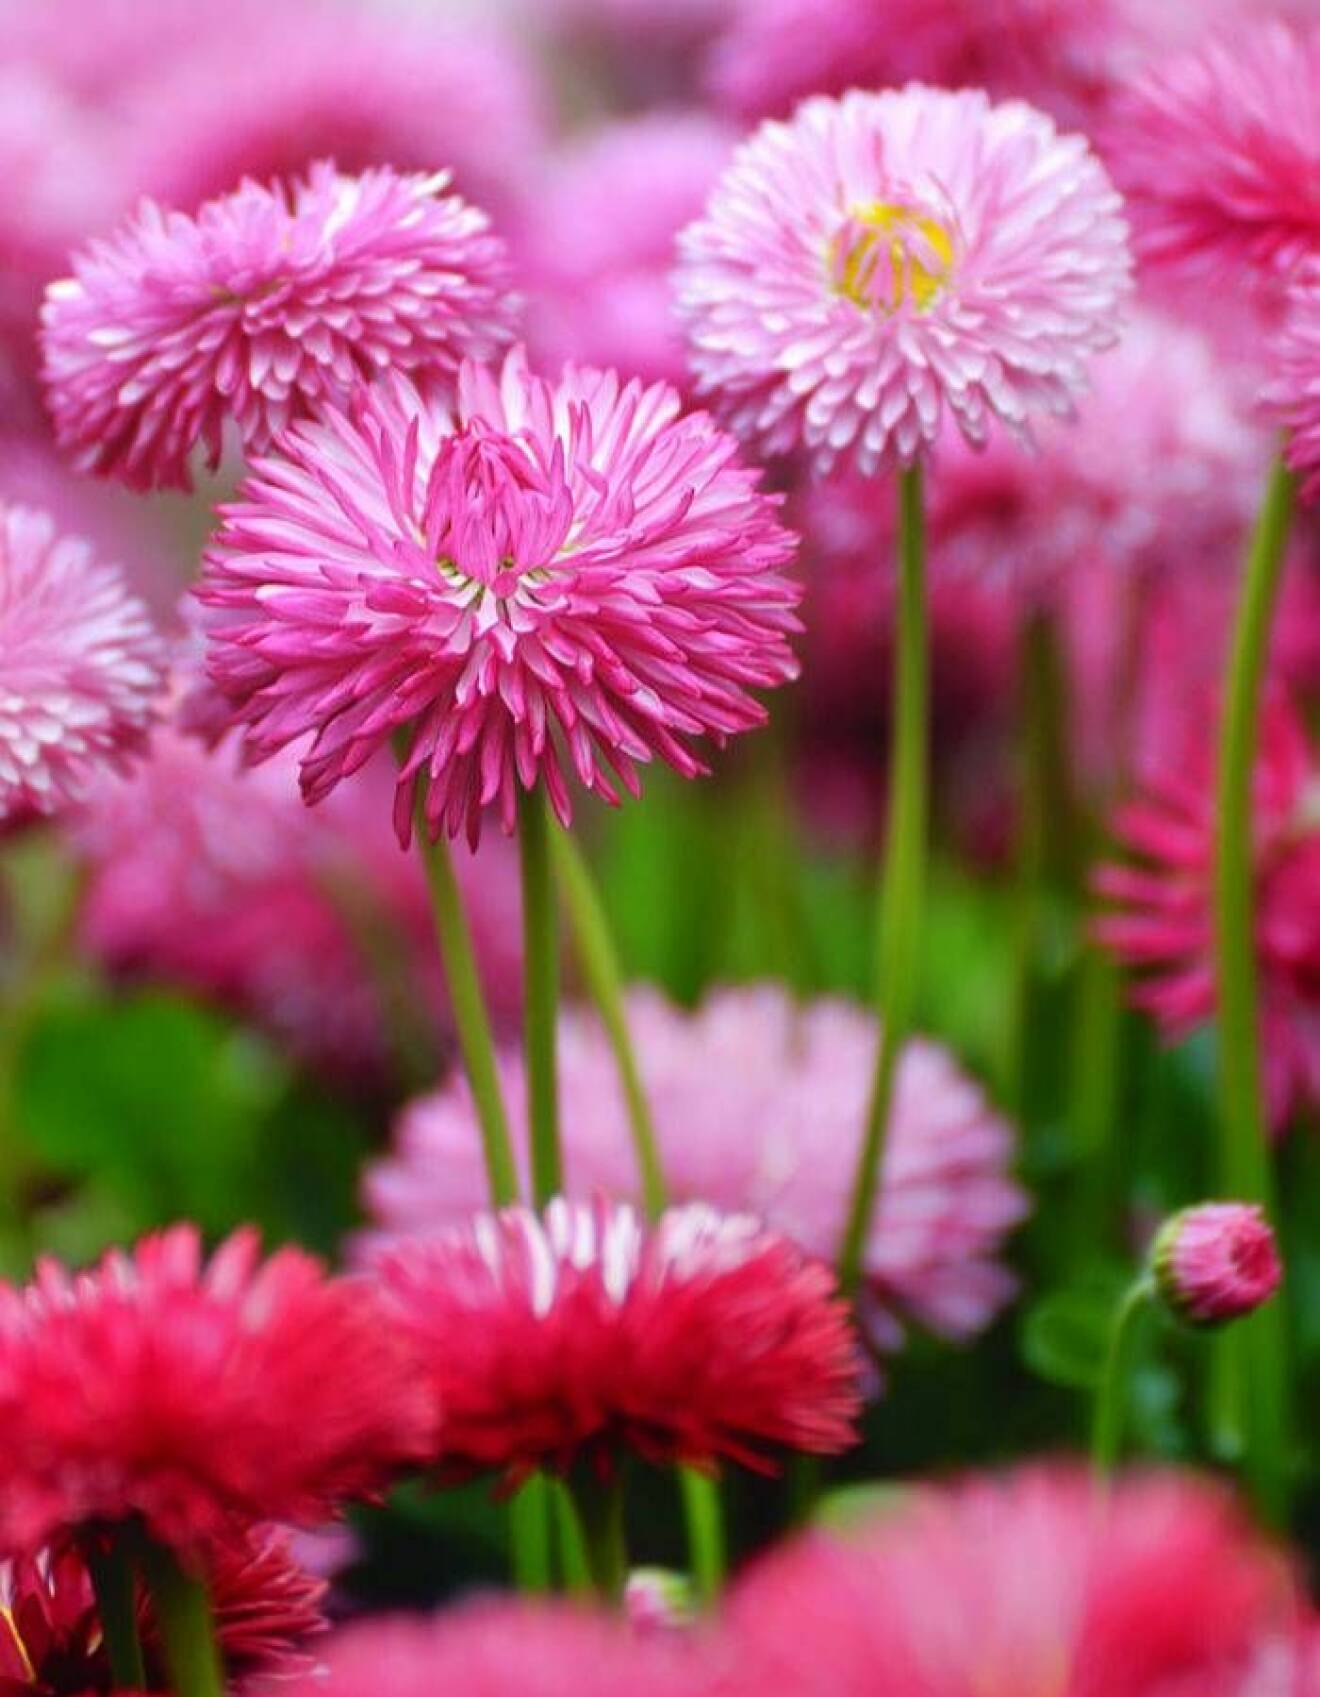 Tusensköna, som egentligen går under namnet Bellis, är en vacker blomma för balkongen under våren och finns i nyanser av vitt, rosa och rött.